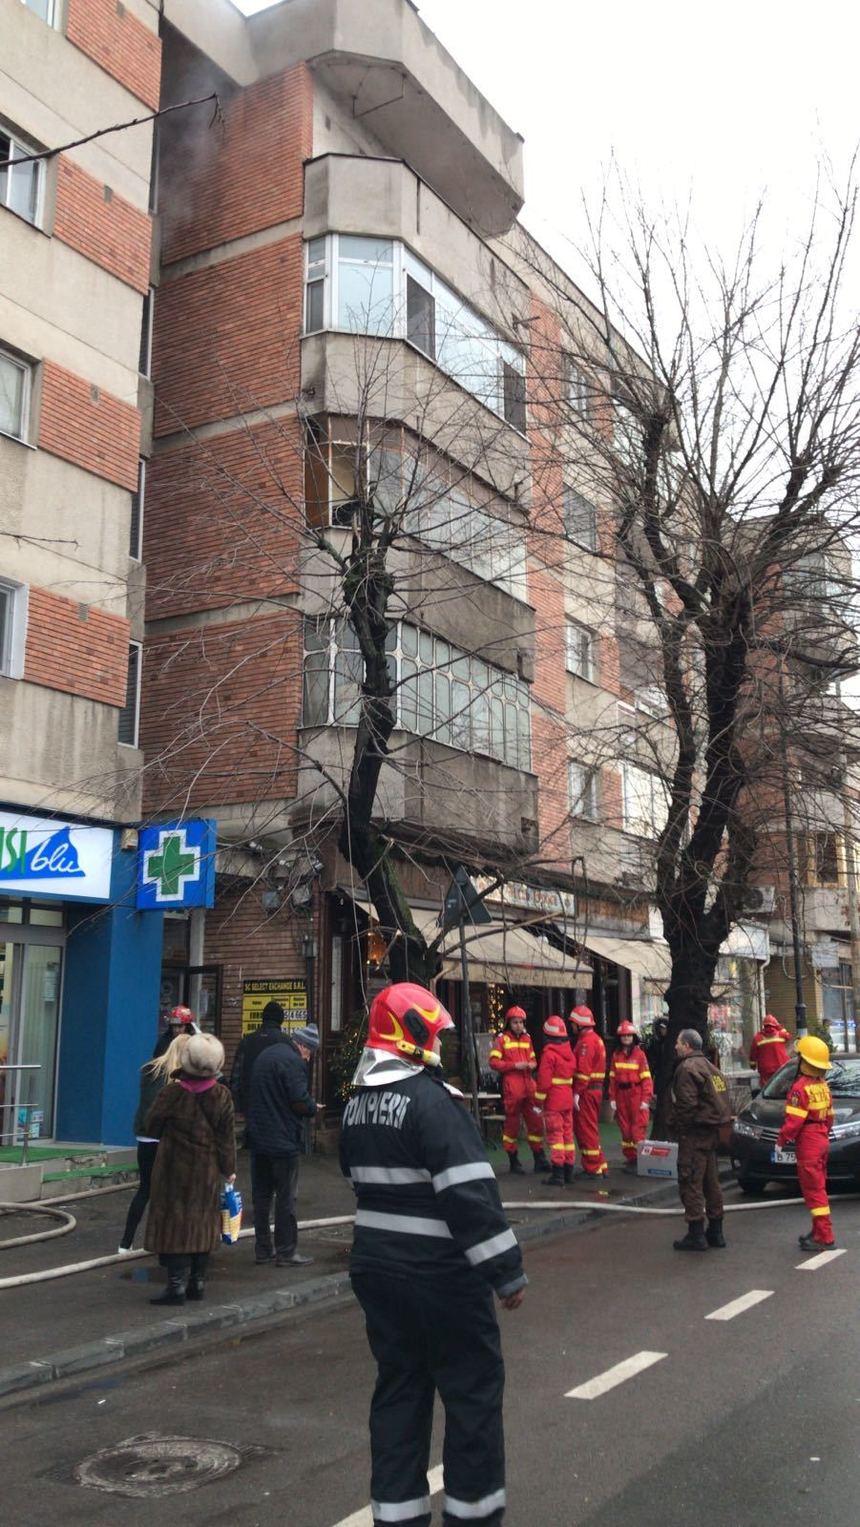 Pompierii intervin pentru stingerea unui incendiu într-un bloc din Sectorul 1 al Capitalei; şapte persoane au fost evacuate